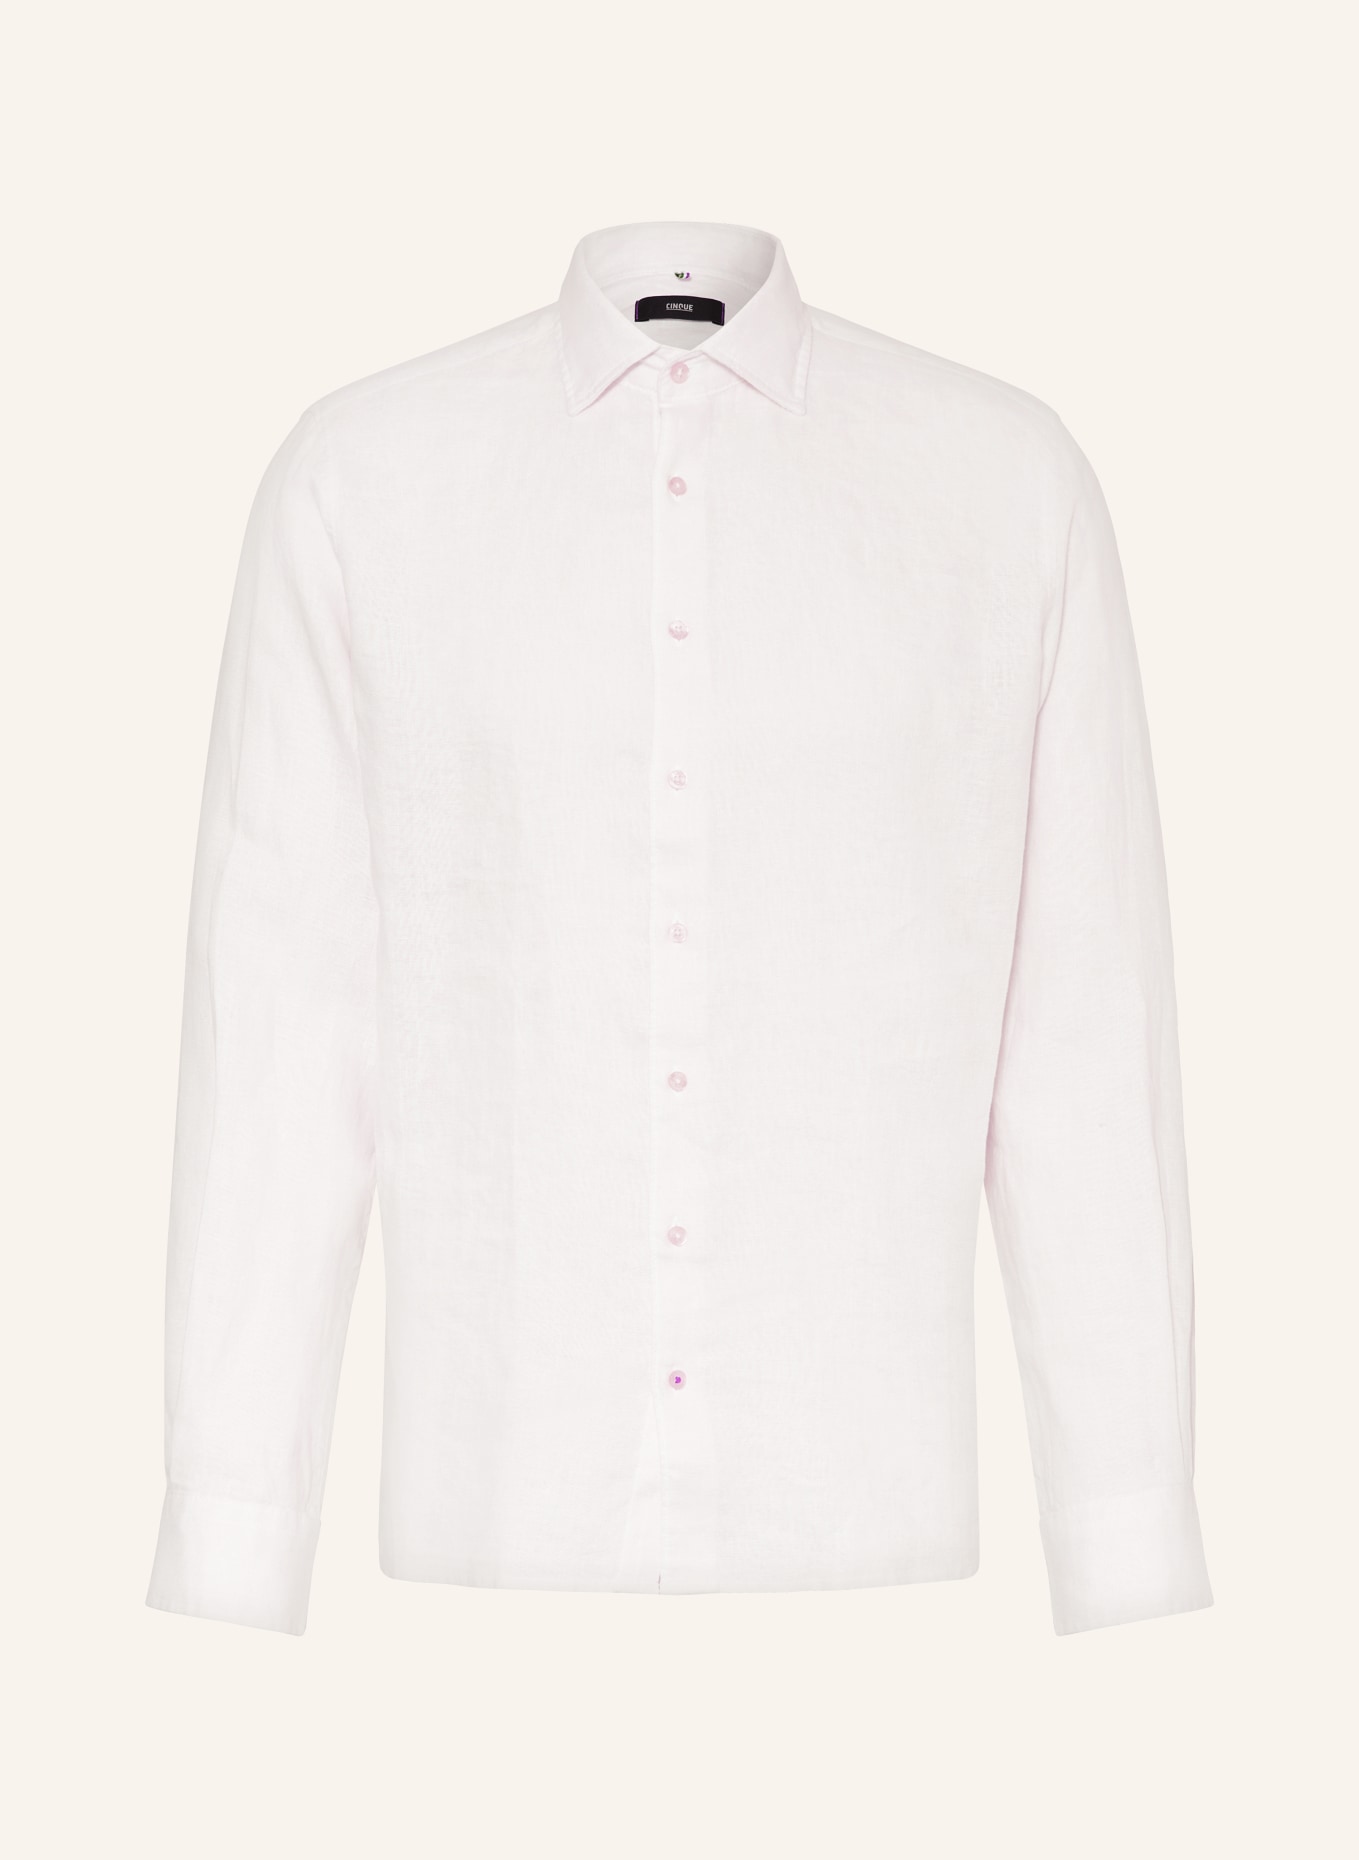 CINQUE Linen shirt CISTEVEN regular fit, Color: WHITE (Image 1)